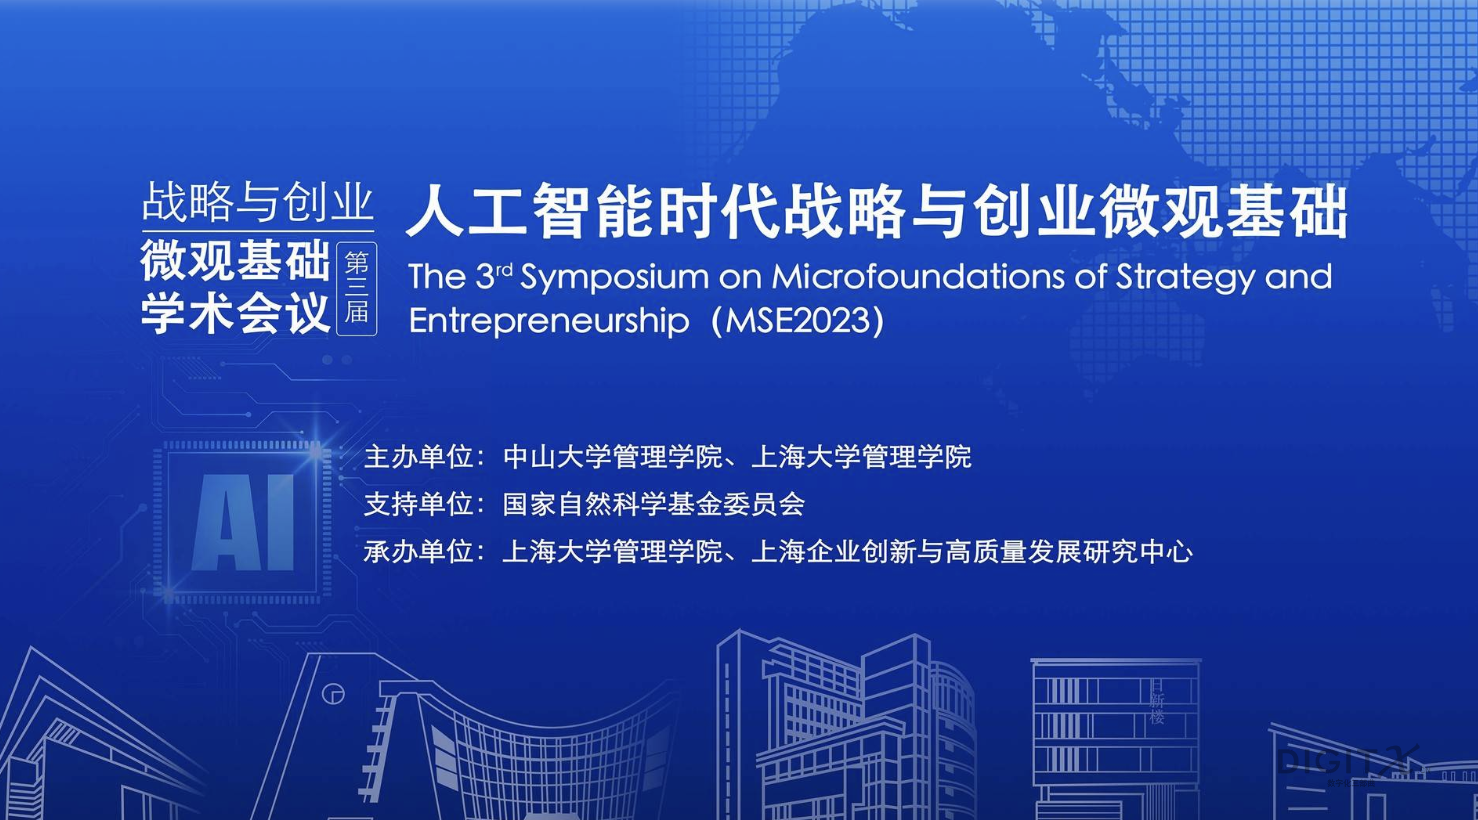 第三届战略与创业微观基础学术会议于上海召开，冯雷发表大模型数据计算系统演讲